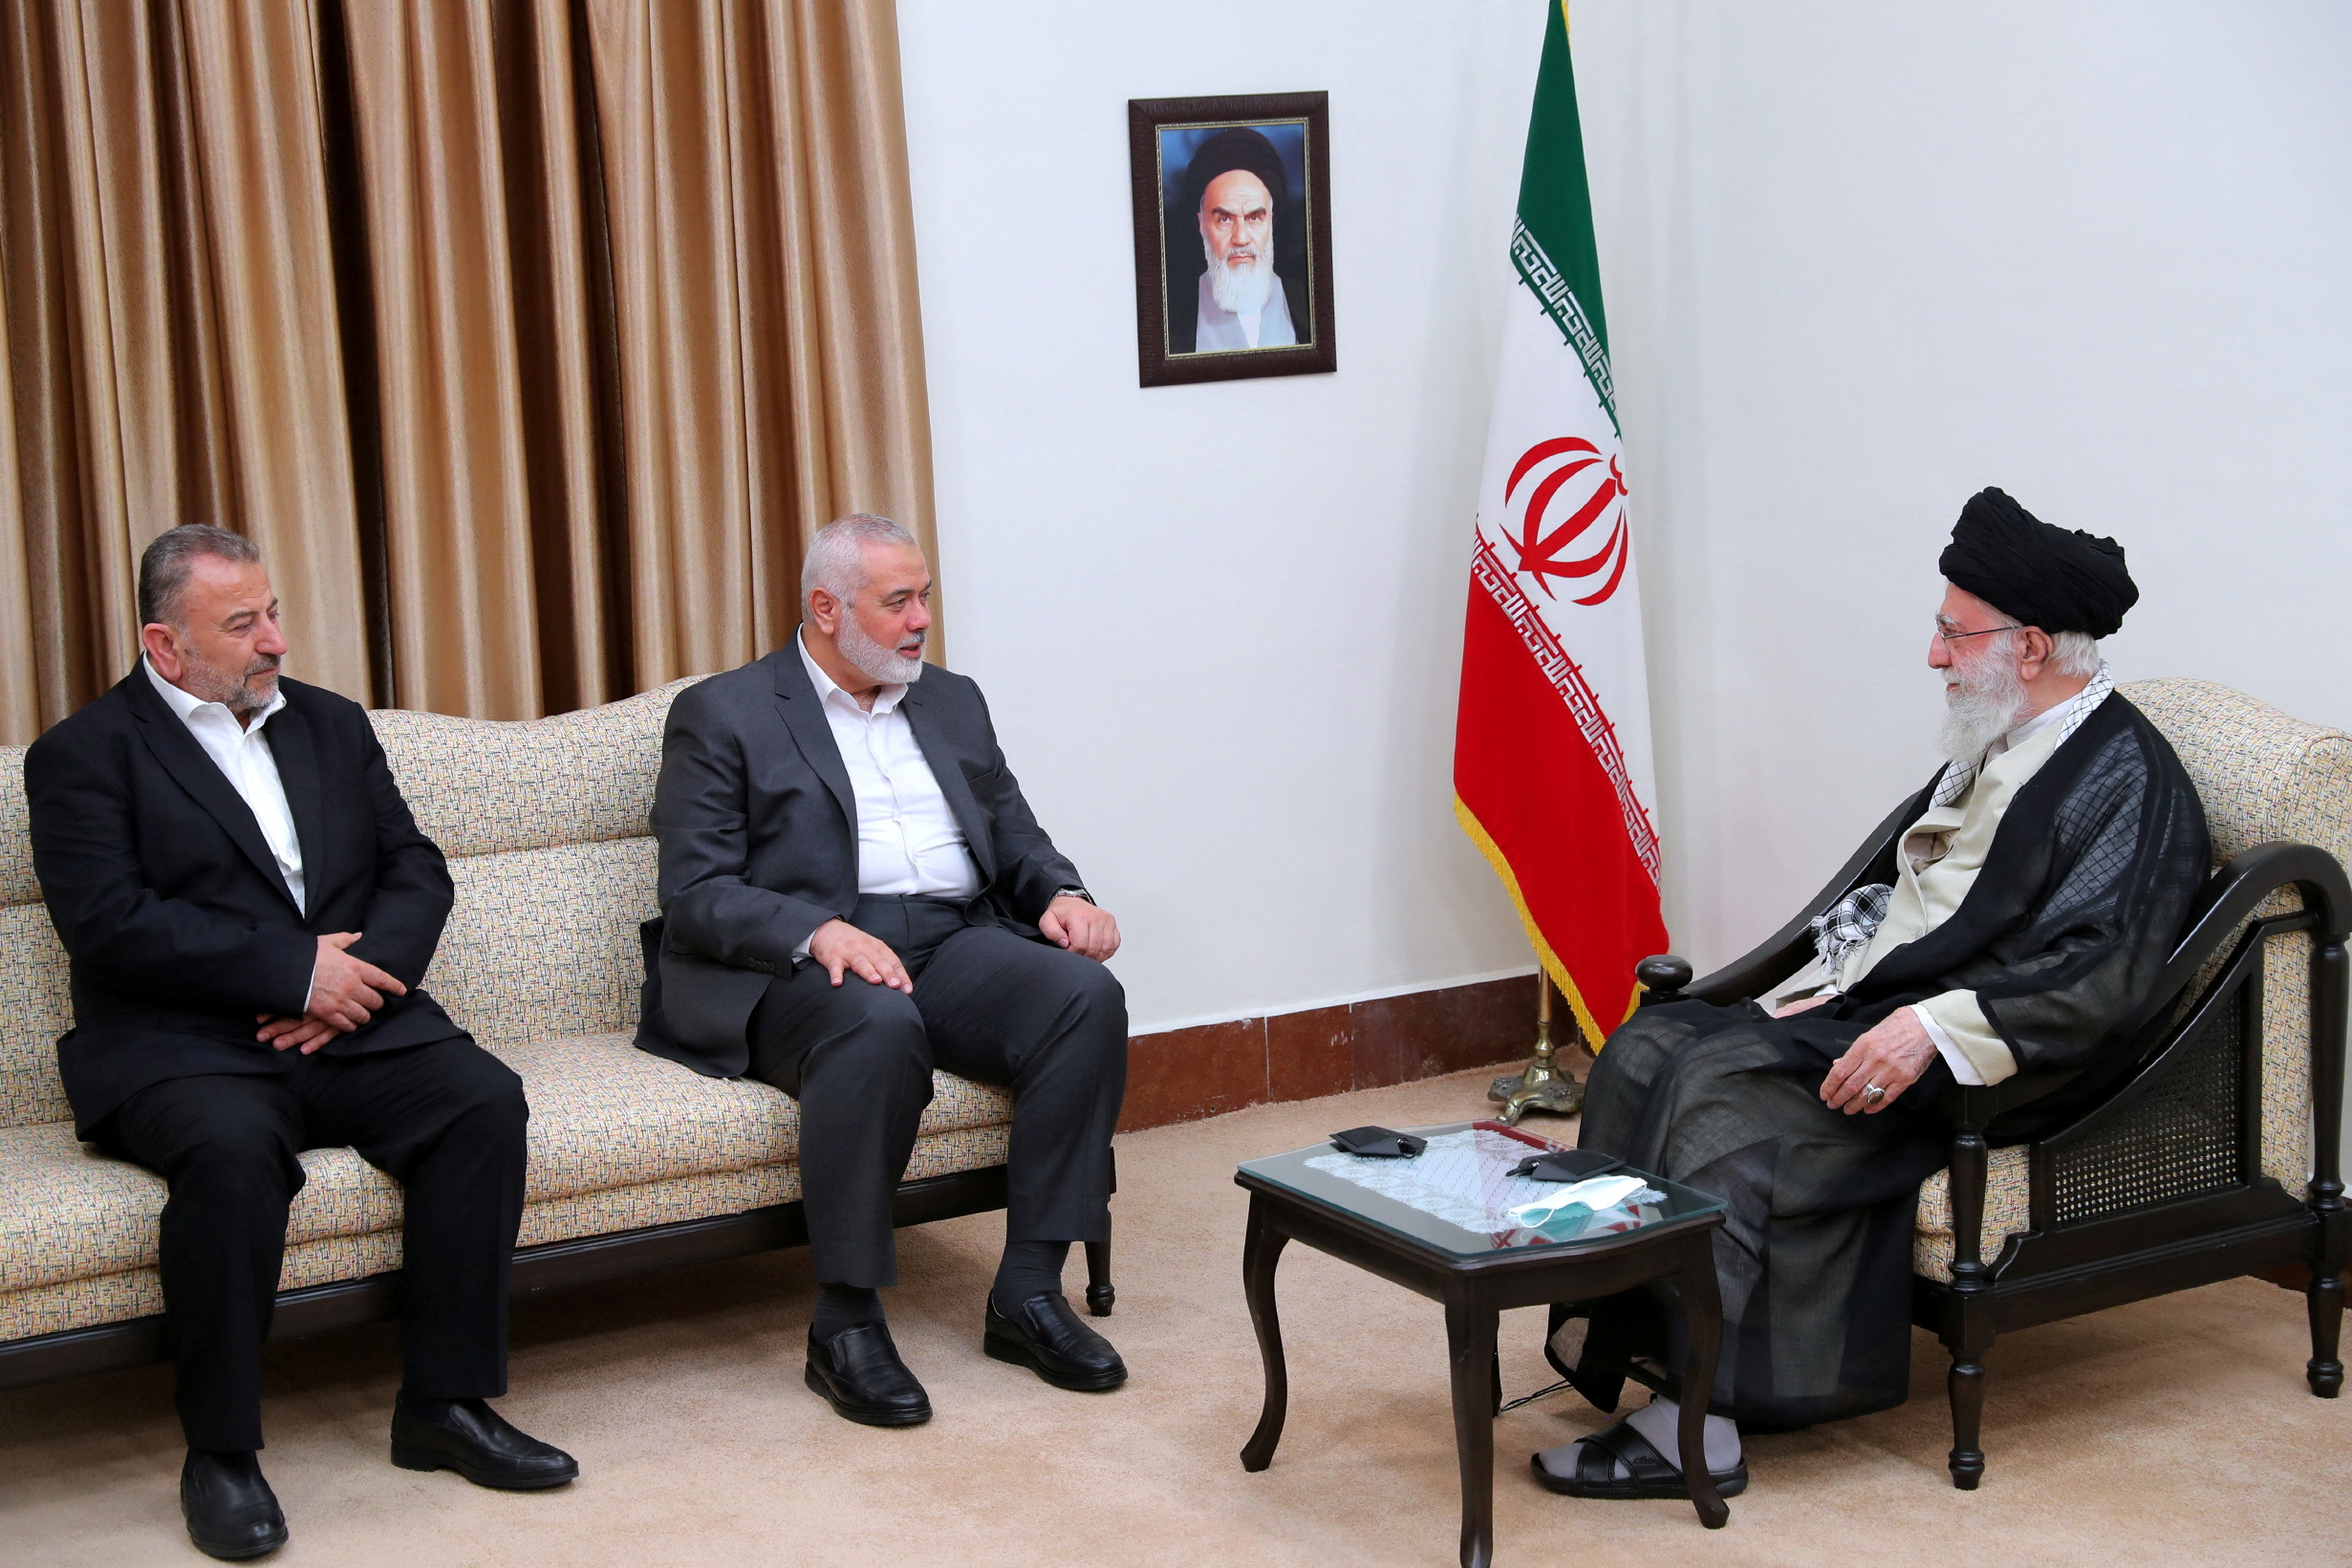 İran devlet medyası, Hamas’ın Haniye’si Hamaney’in Tahran’da görüştüğünü doğruladı